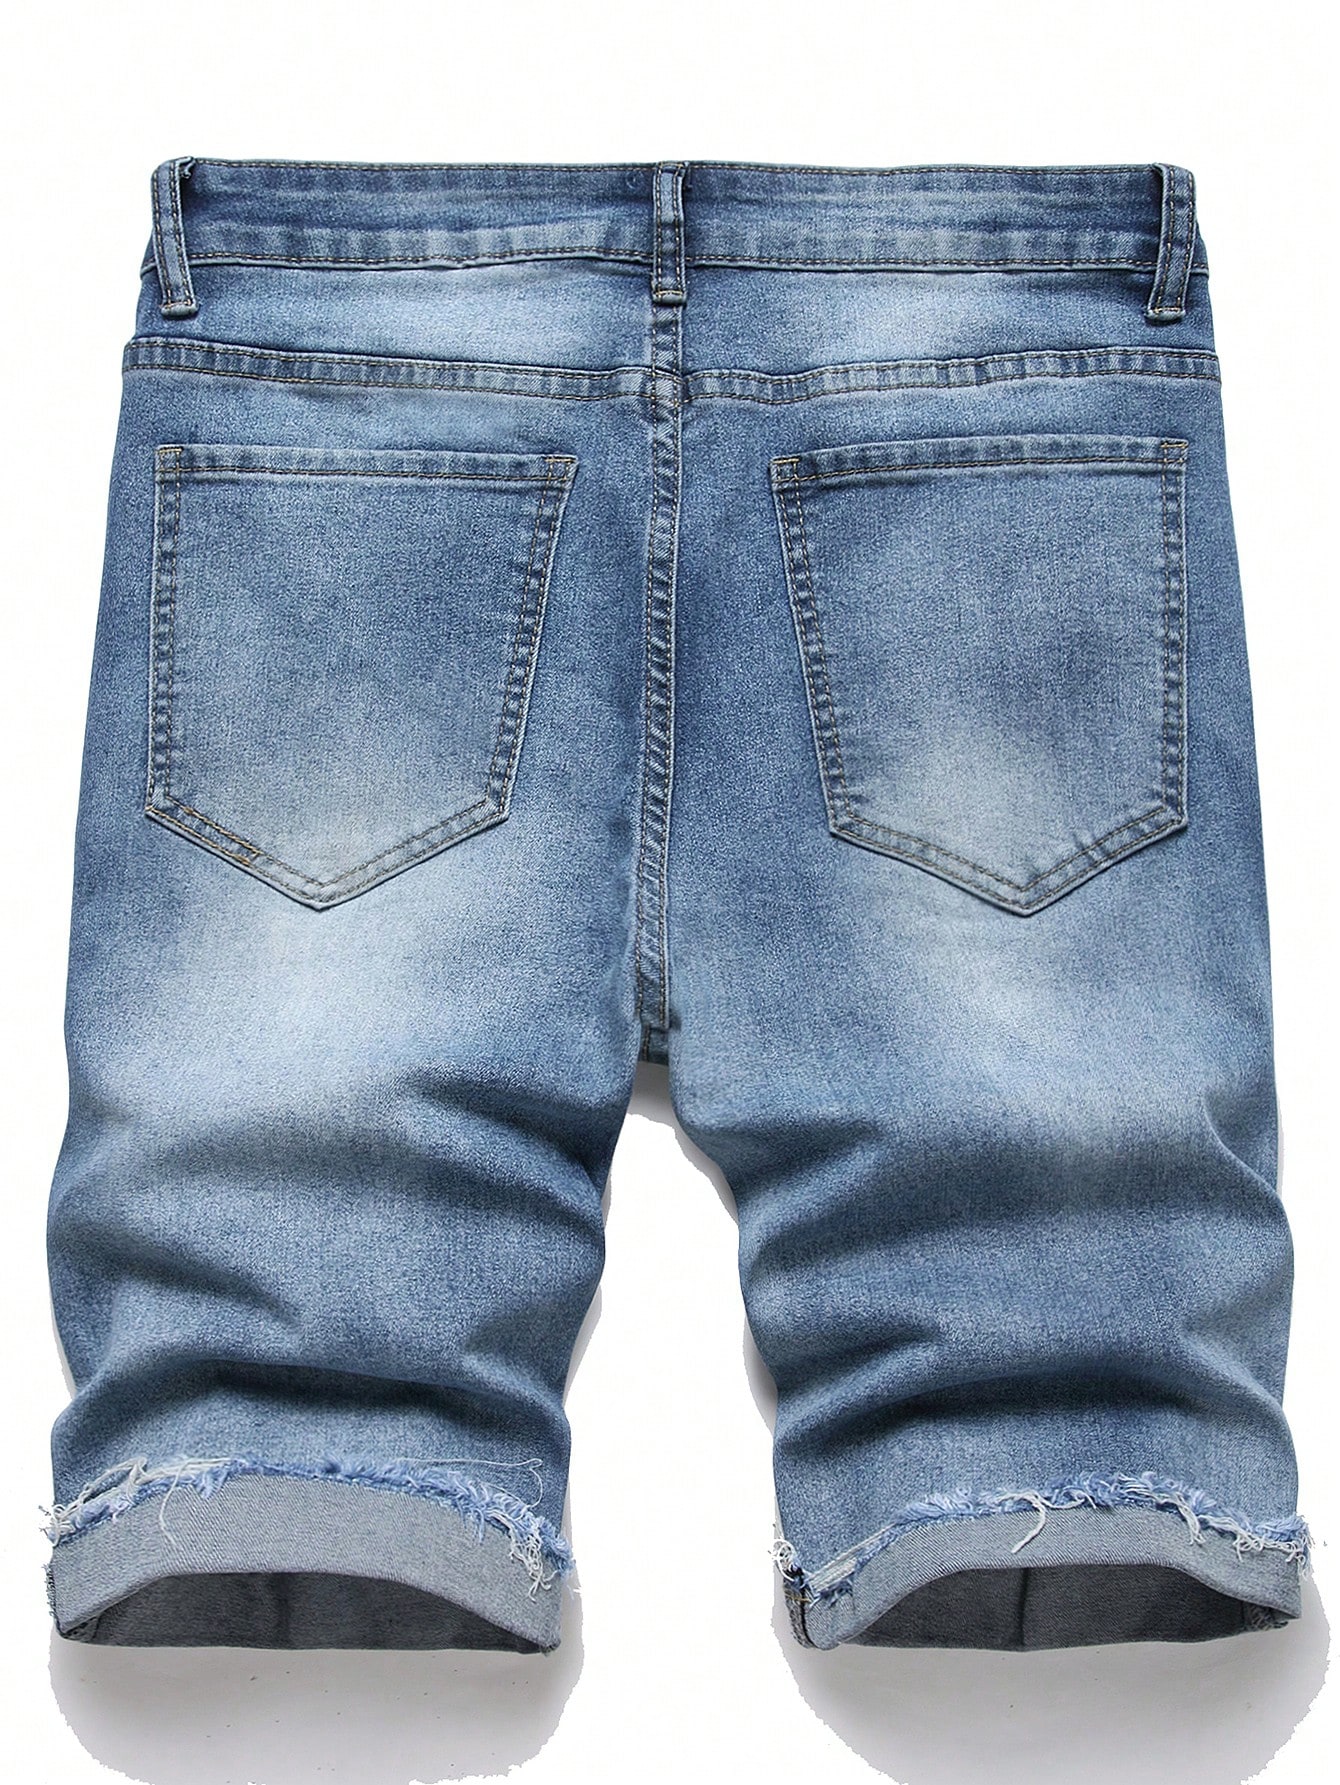 цена Мужские потертые джинсовые шорты Manfinity Hypemode, средняя стирка